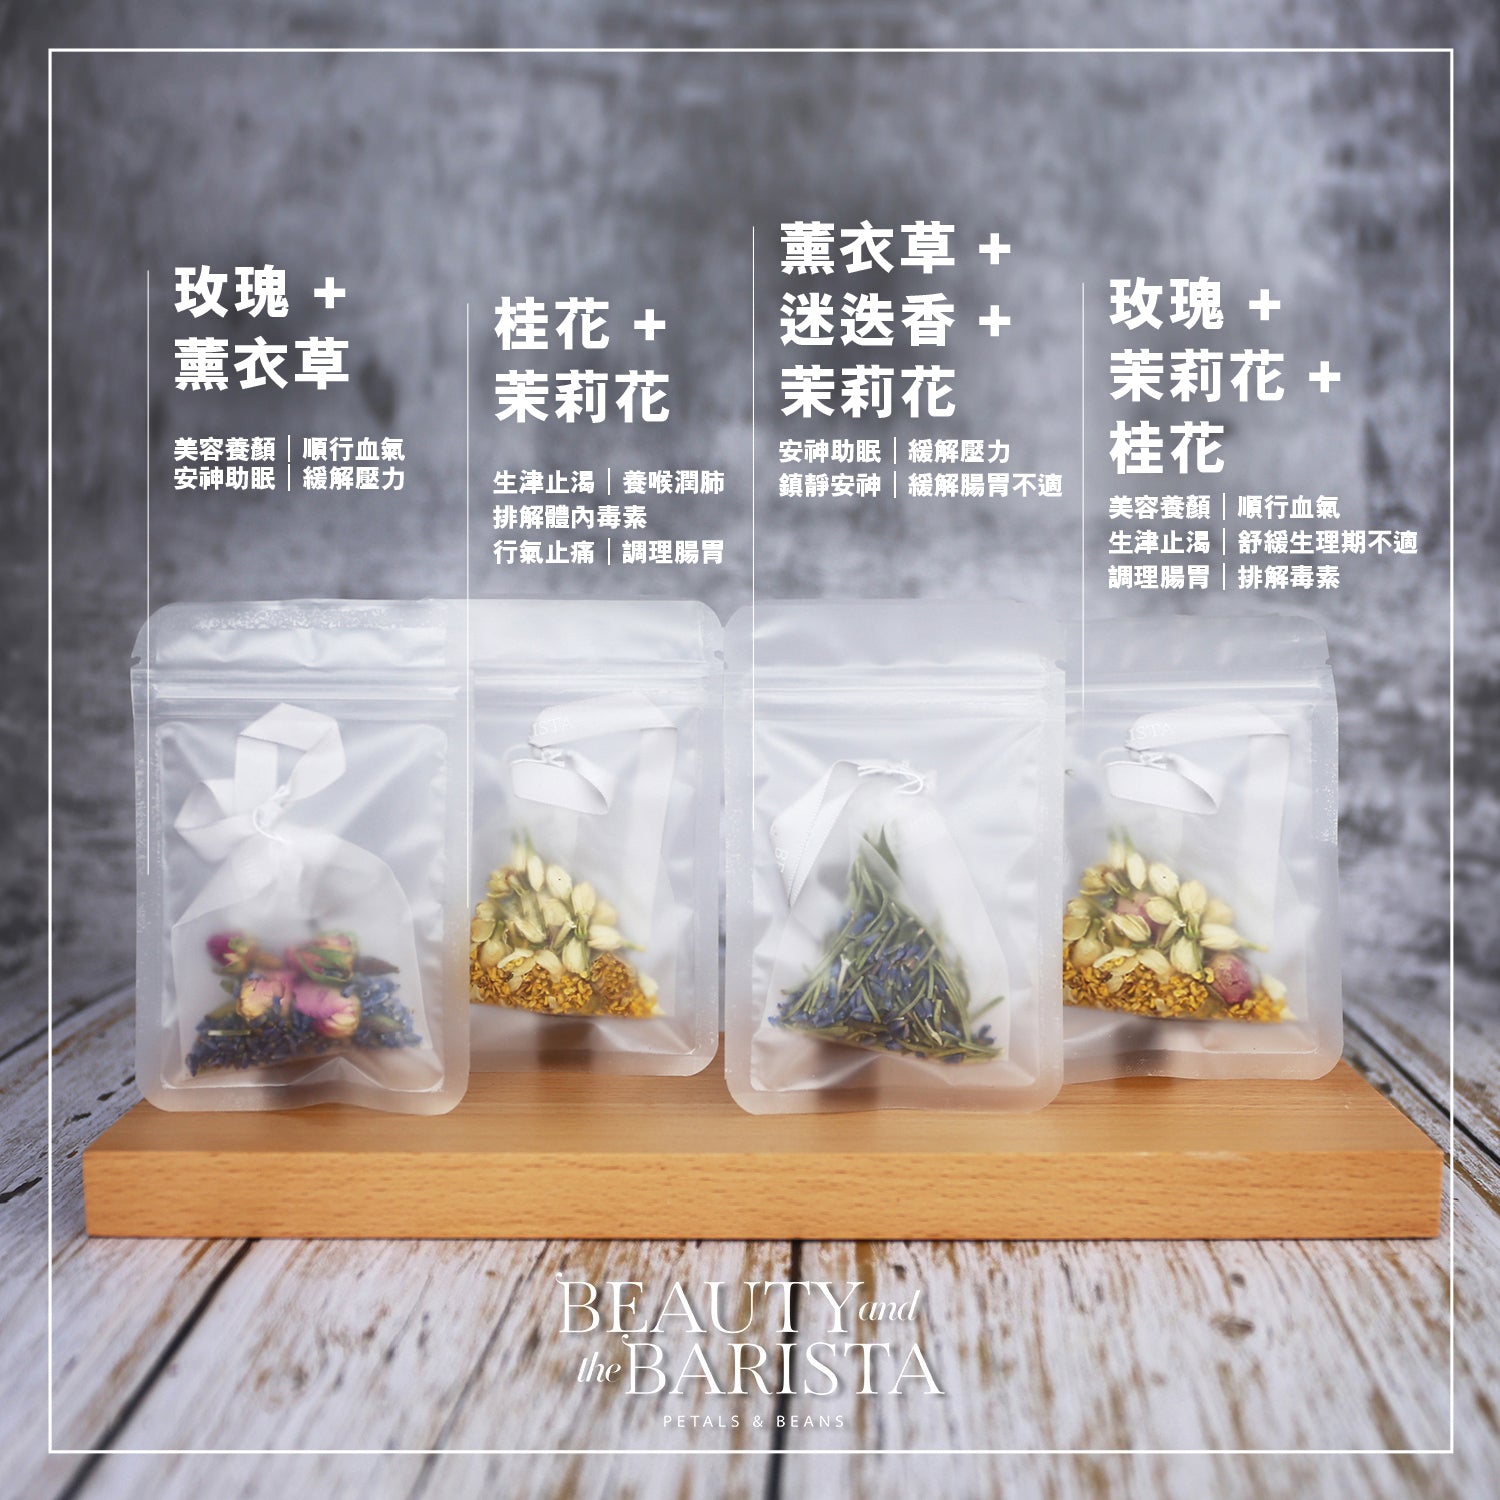 花草茶魔法系列｜桂花 + 茉莉花｜樽裝茶包